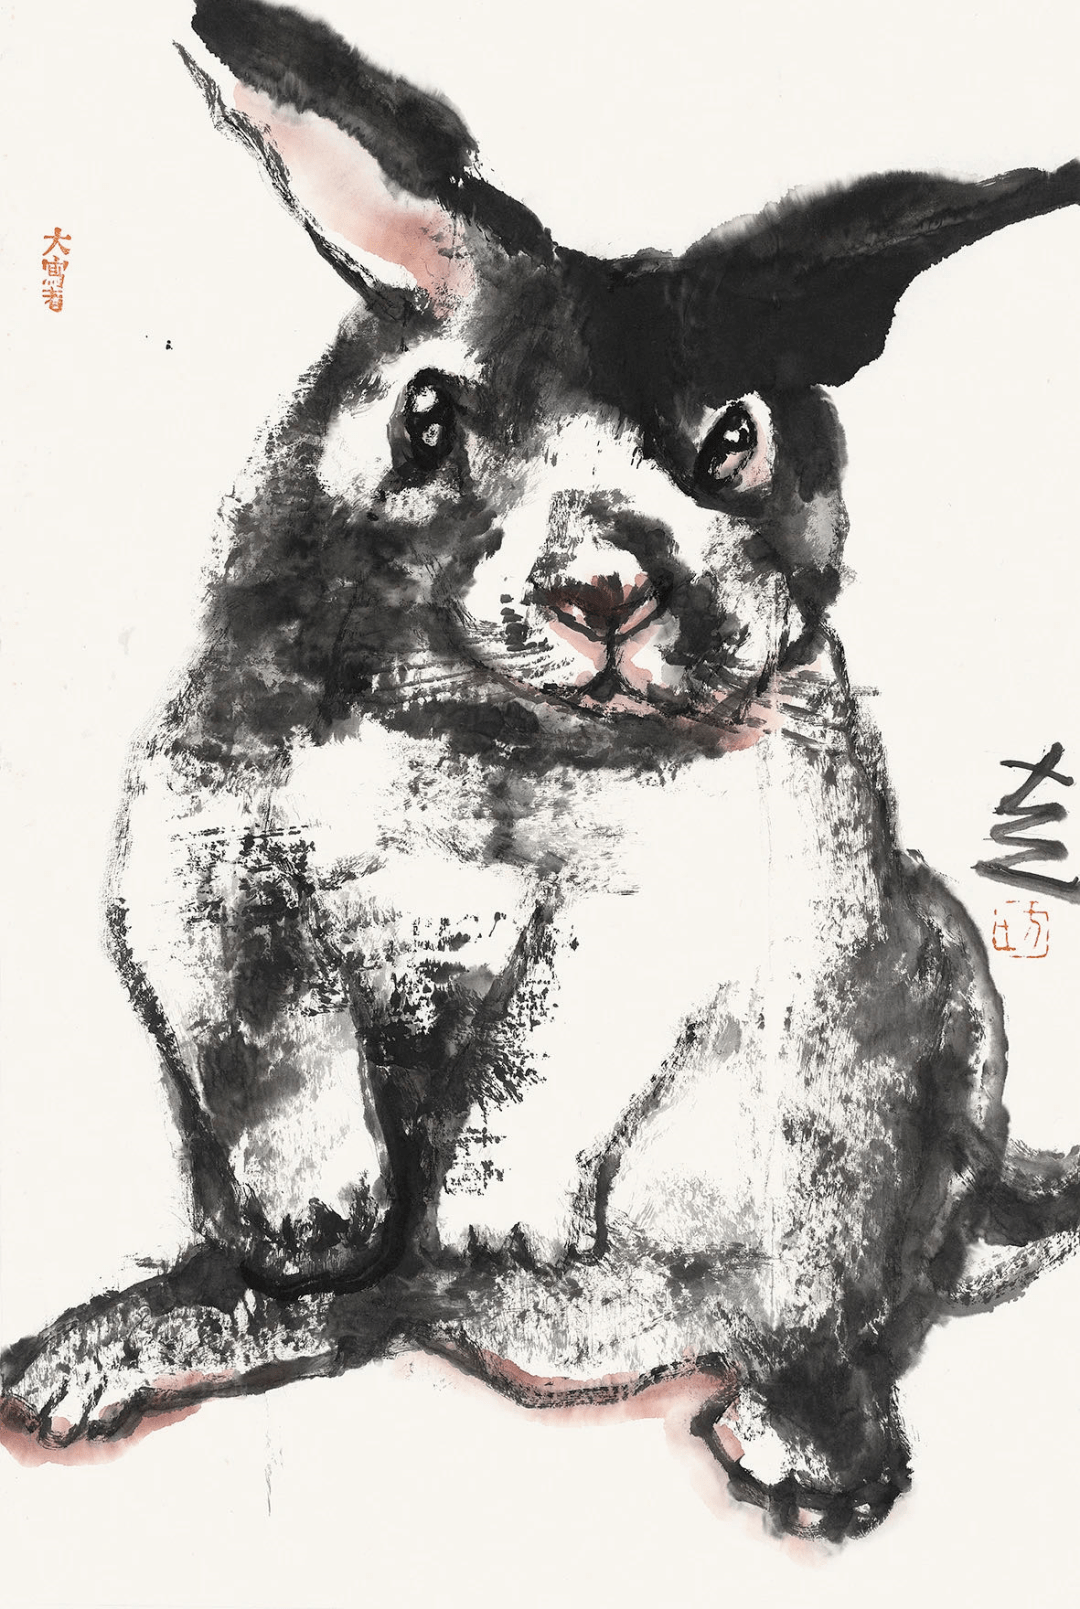 玉兔狗卡通壁纸图片